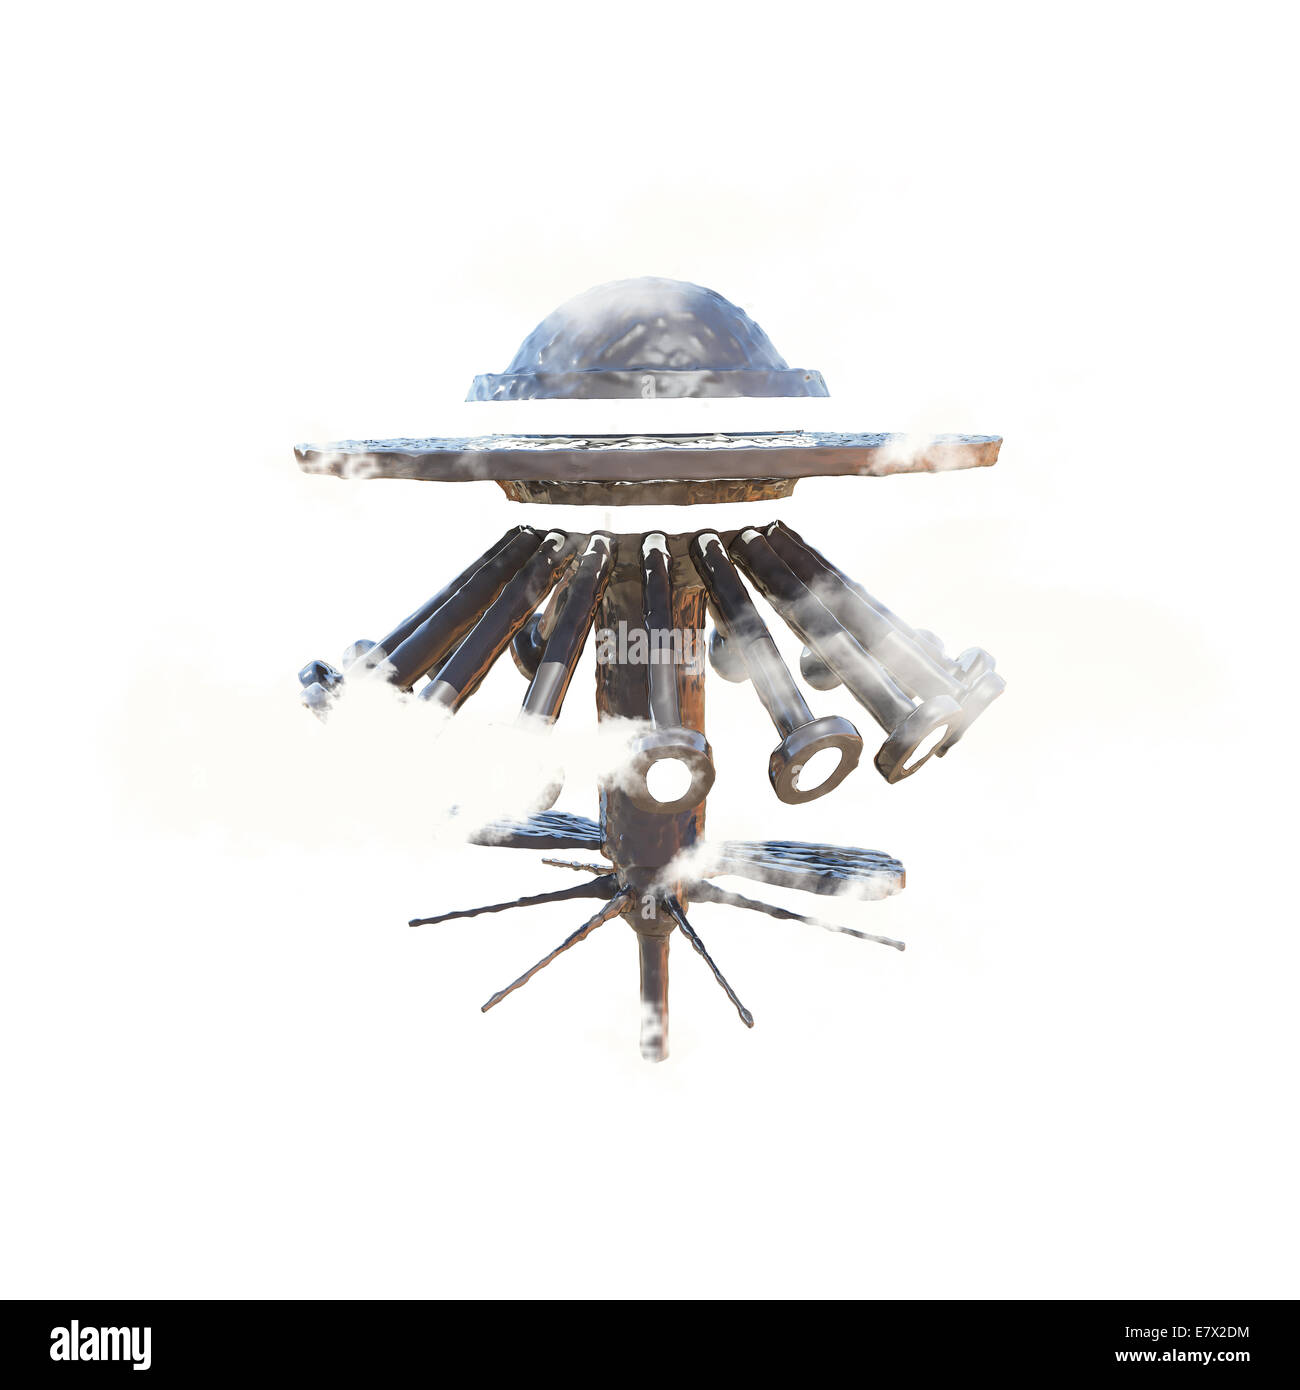 ufo spaceship isolated on white background Stock Photo